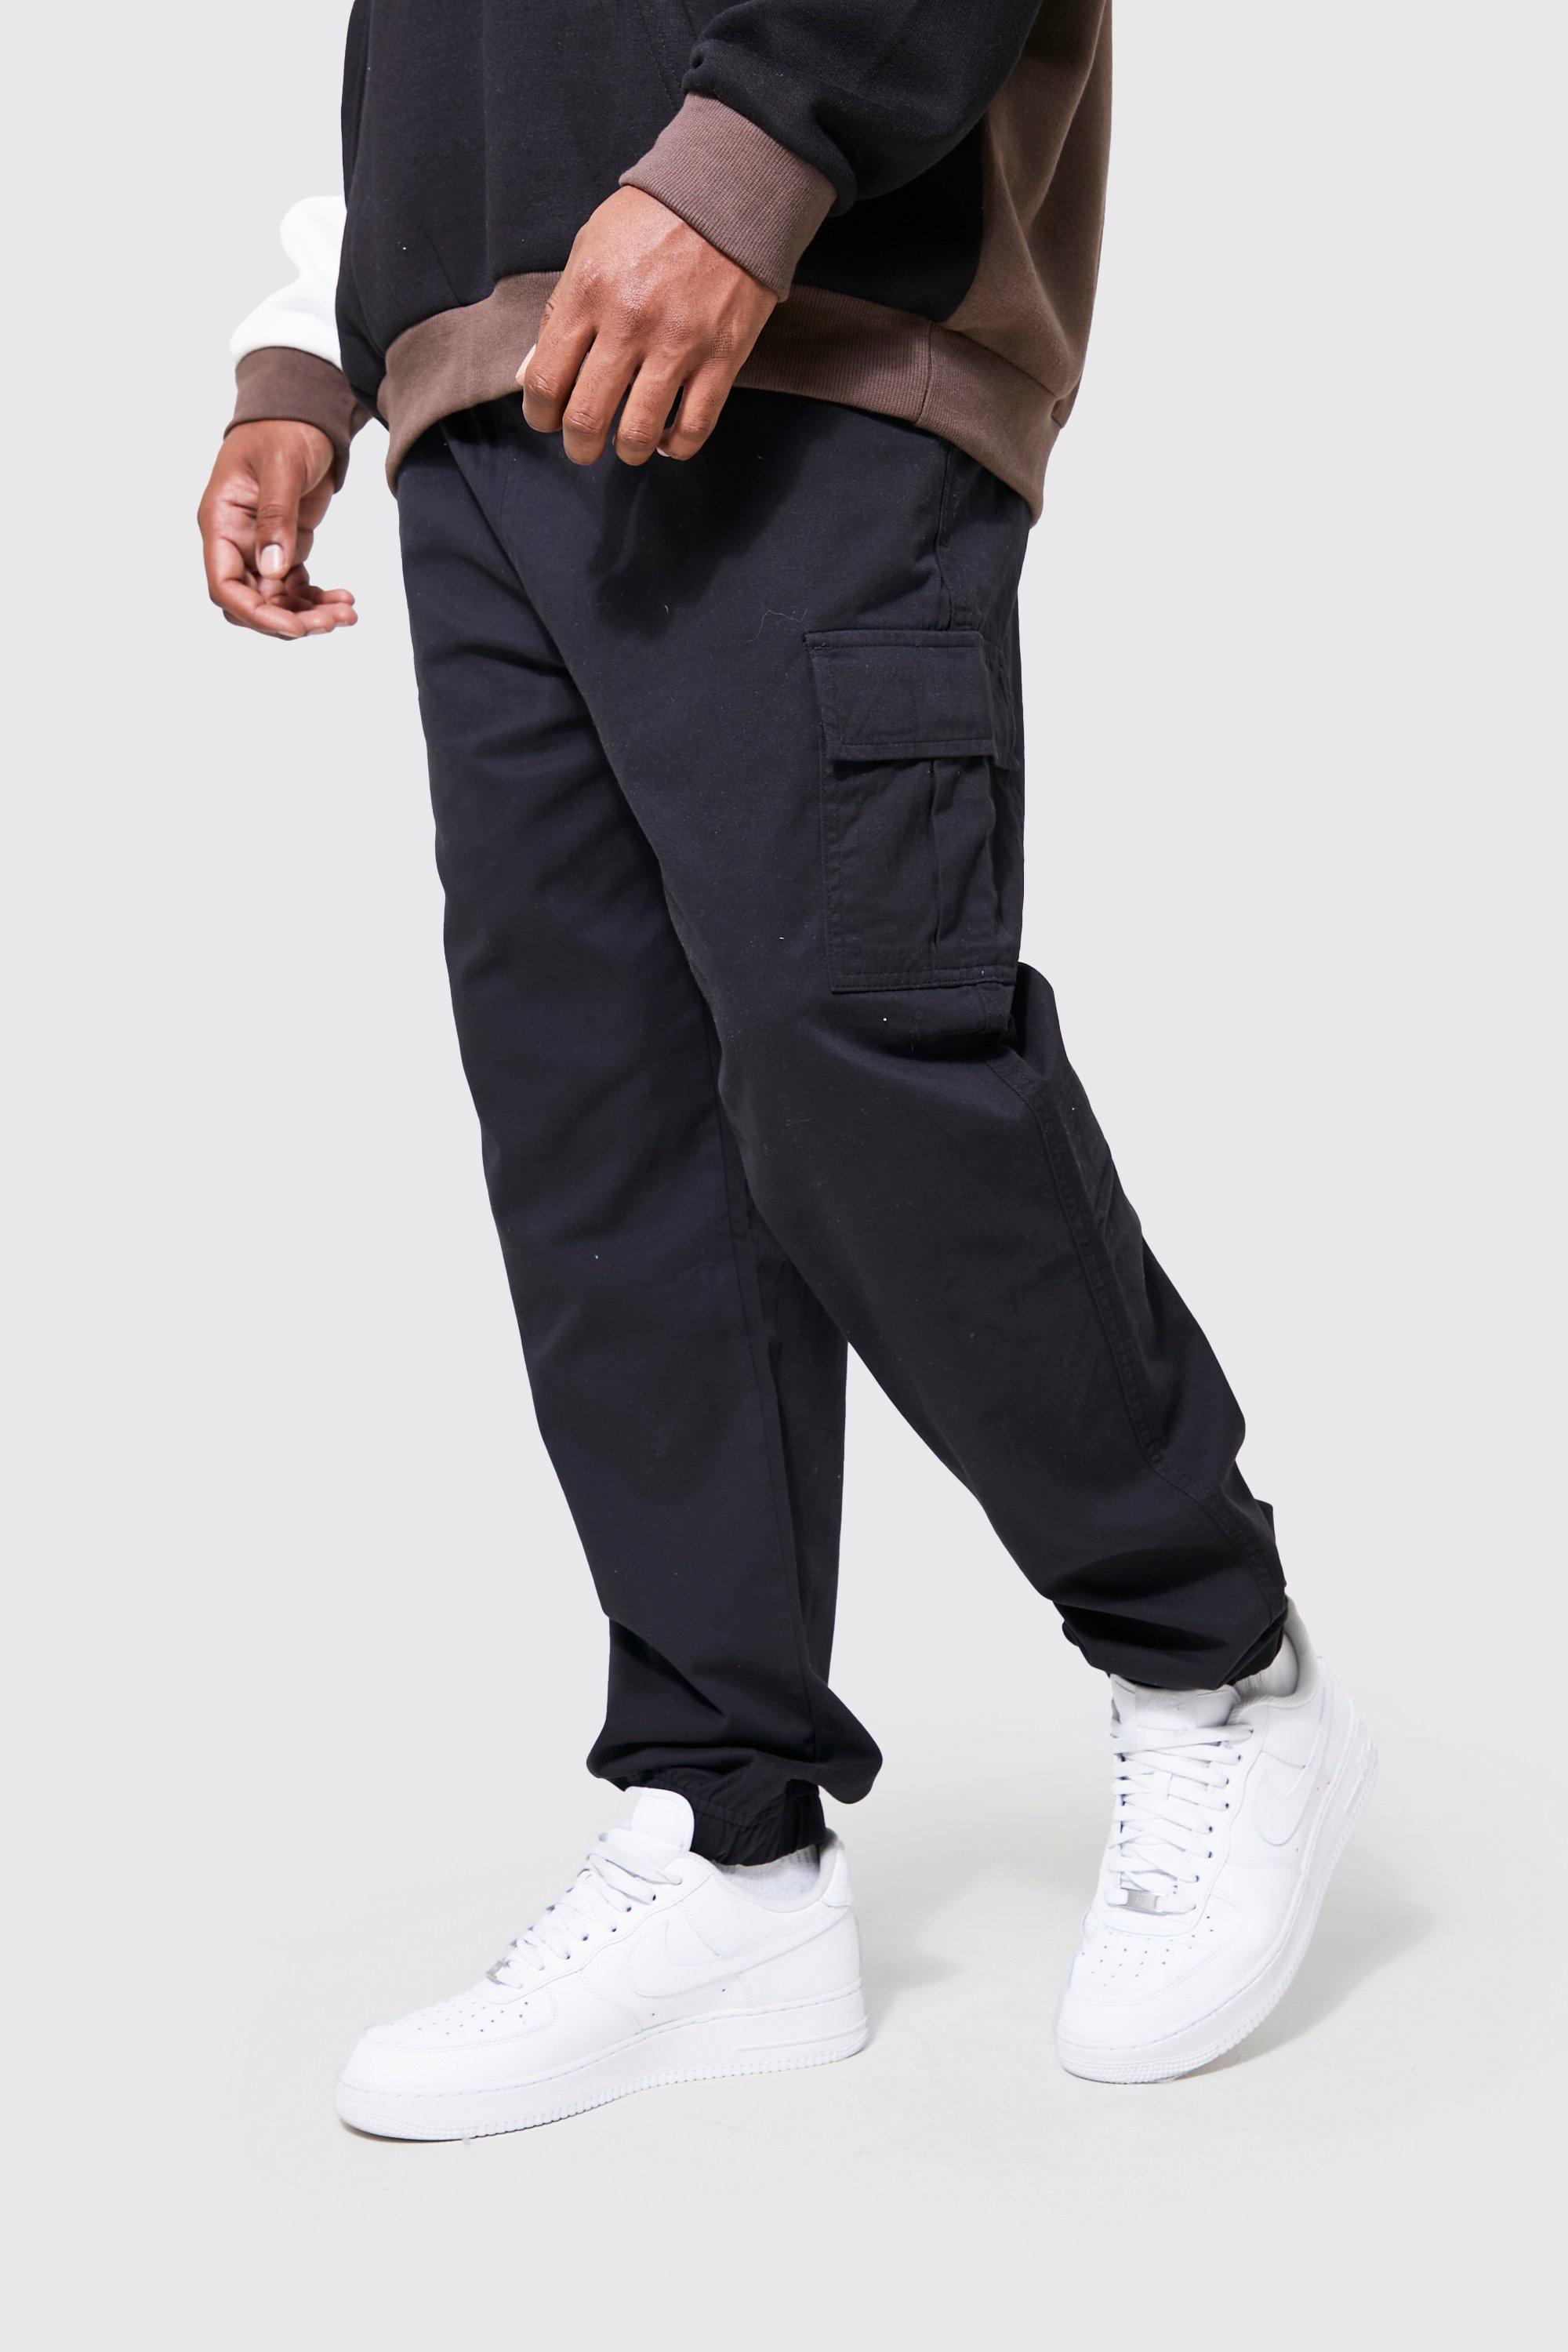 grande taille - pantalon cargo coupe slim homme - noir - xxxl, noir